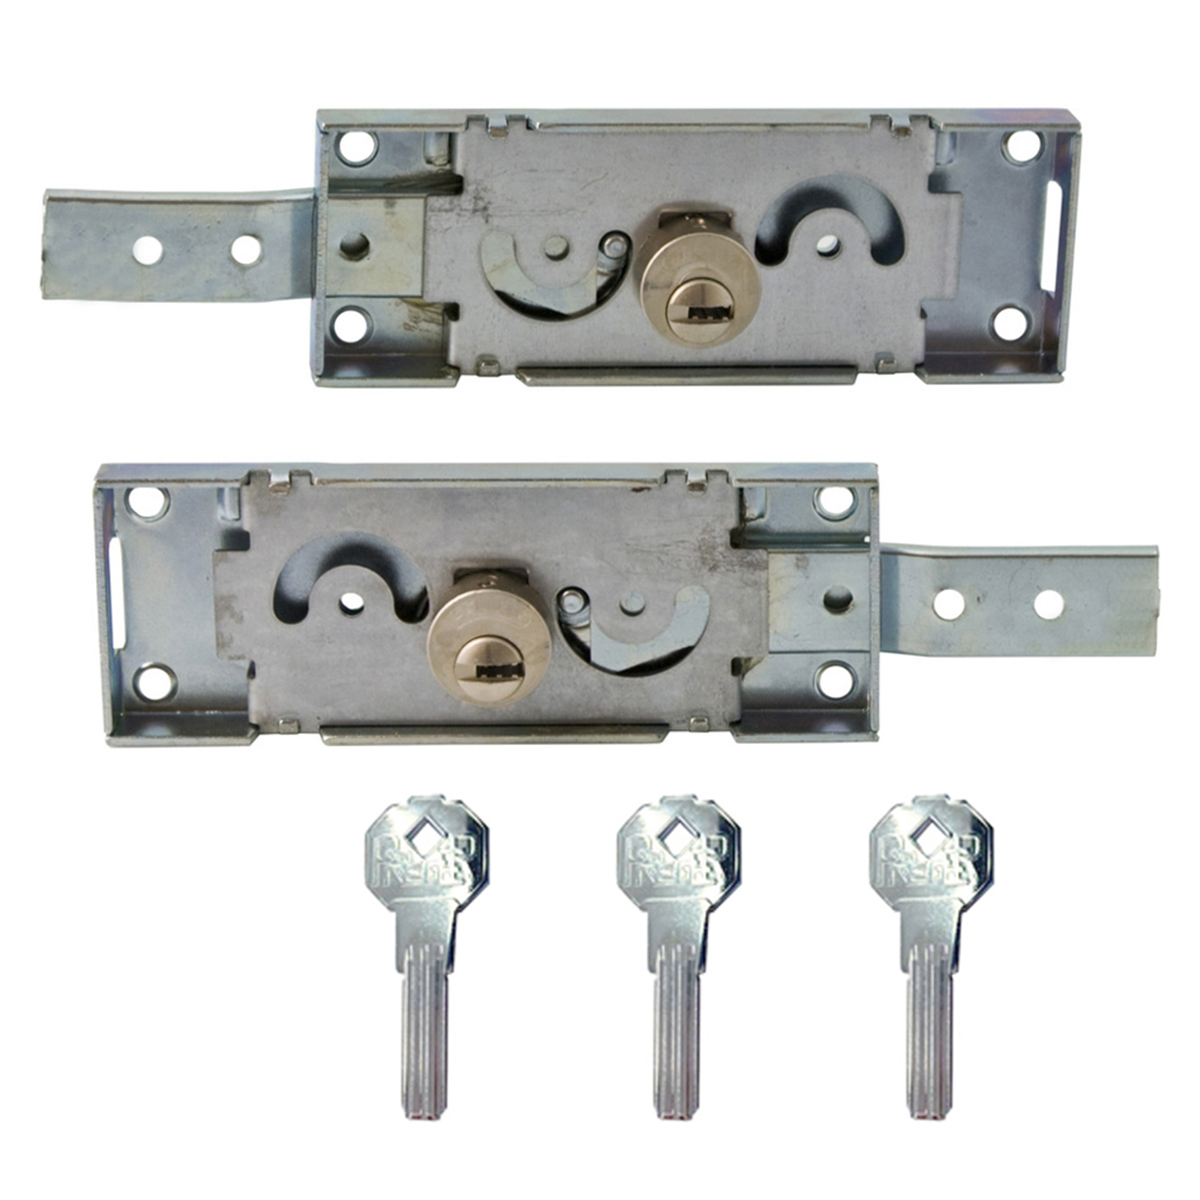 Serratura laterali per serrande con chiave europea Prefer S711 destra e sinistra